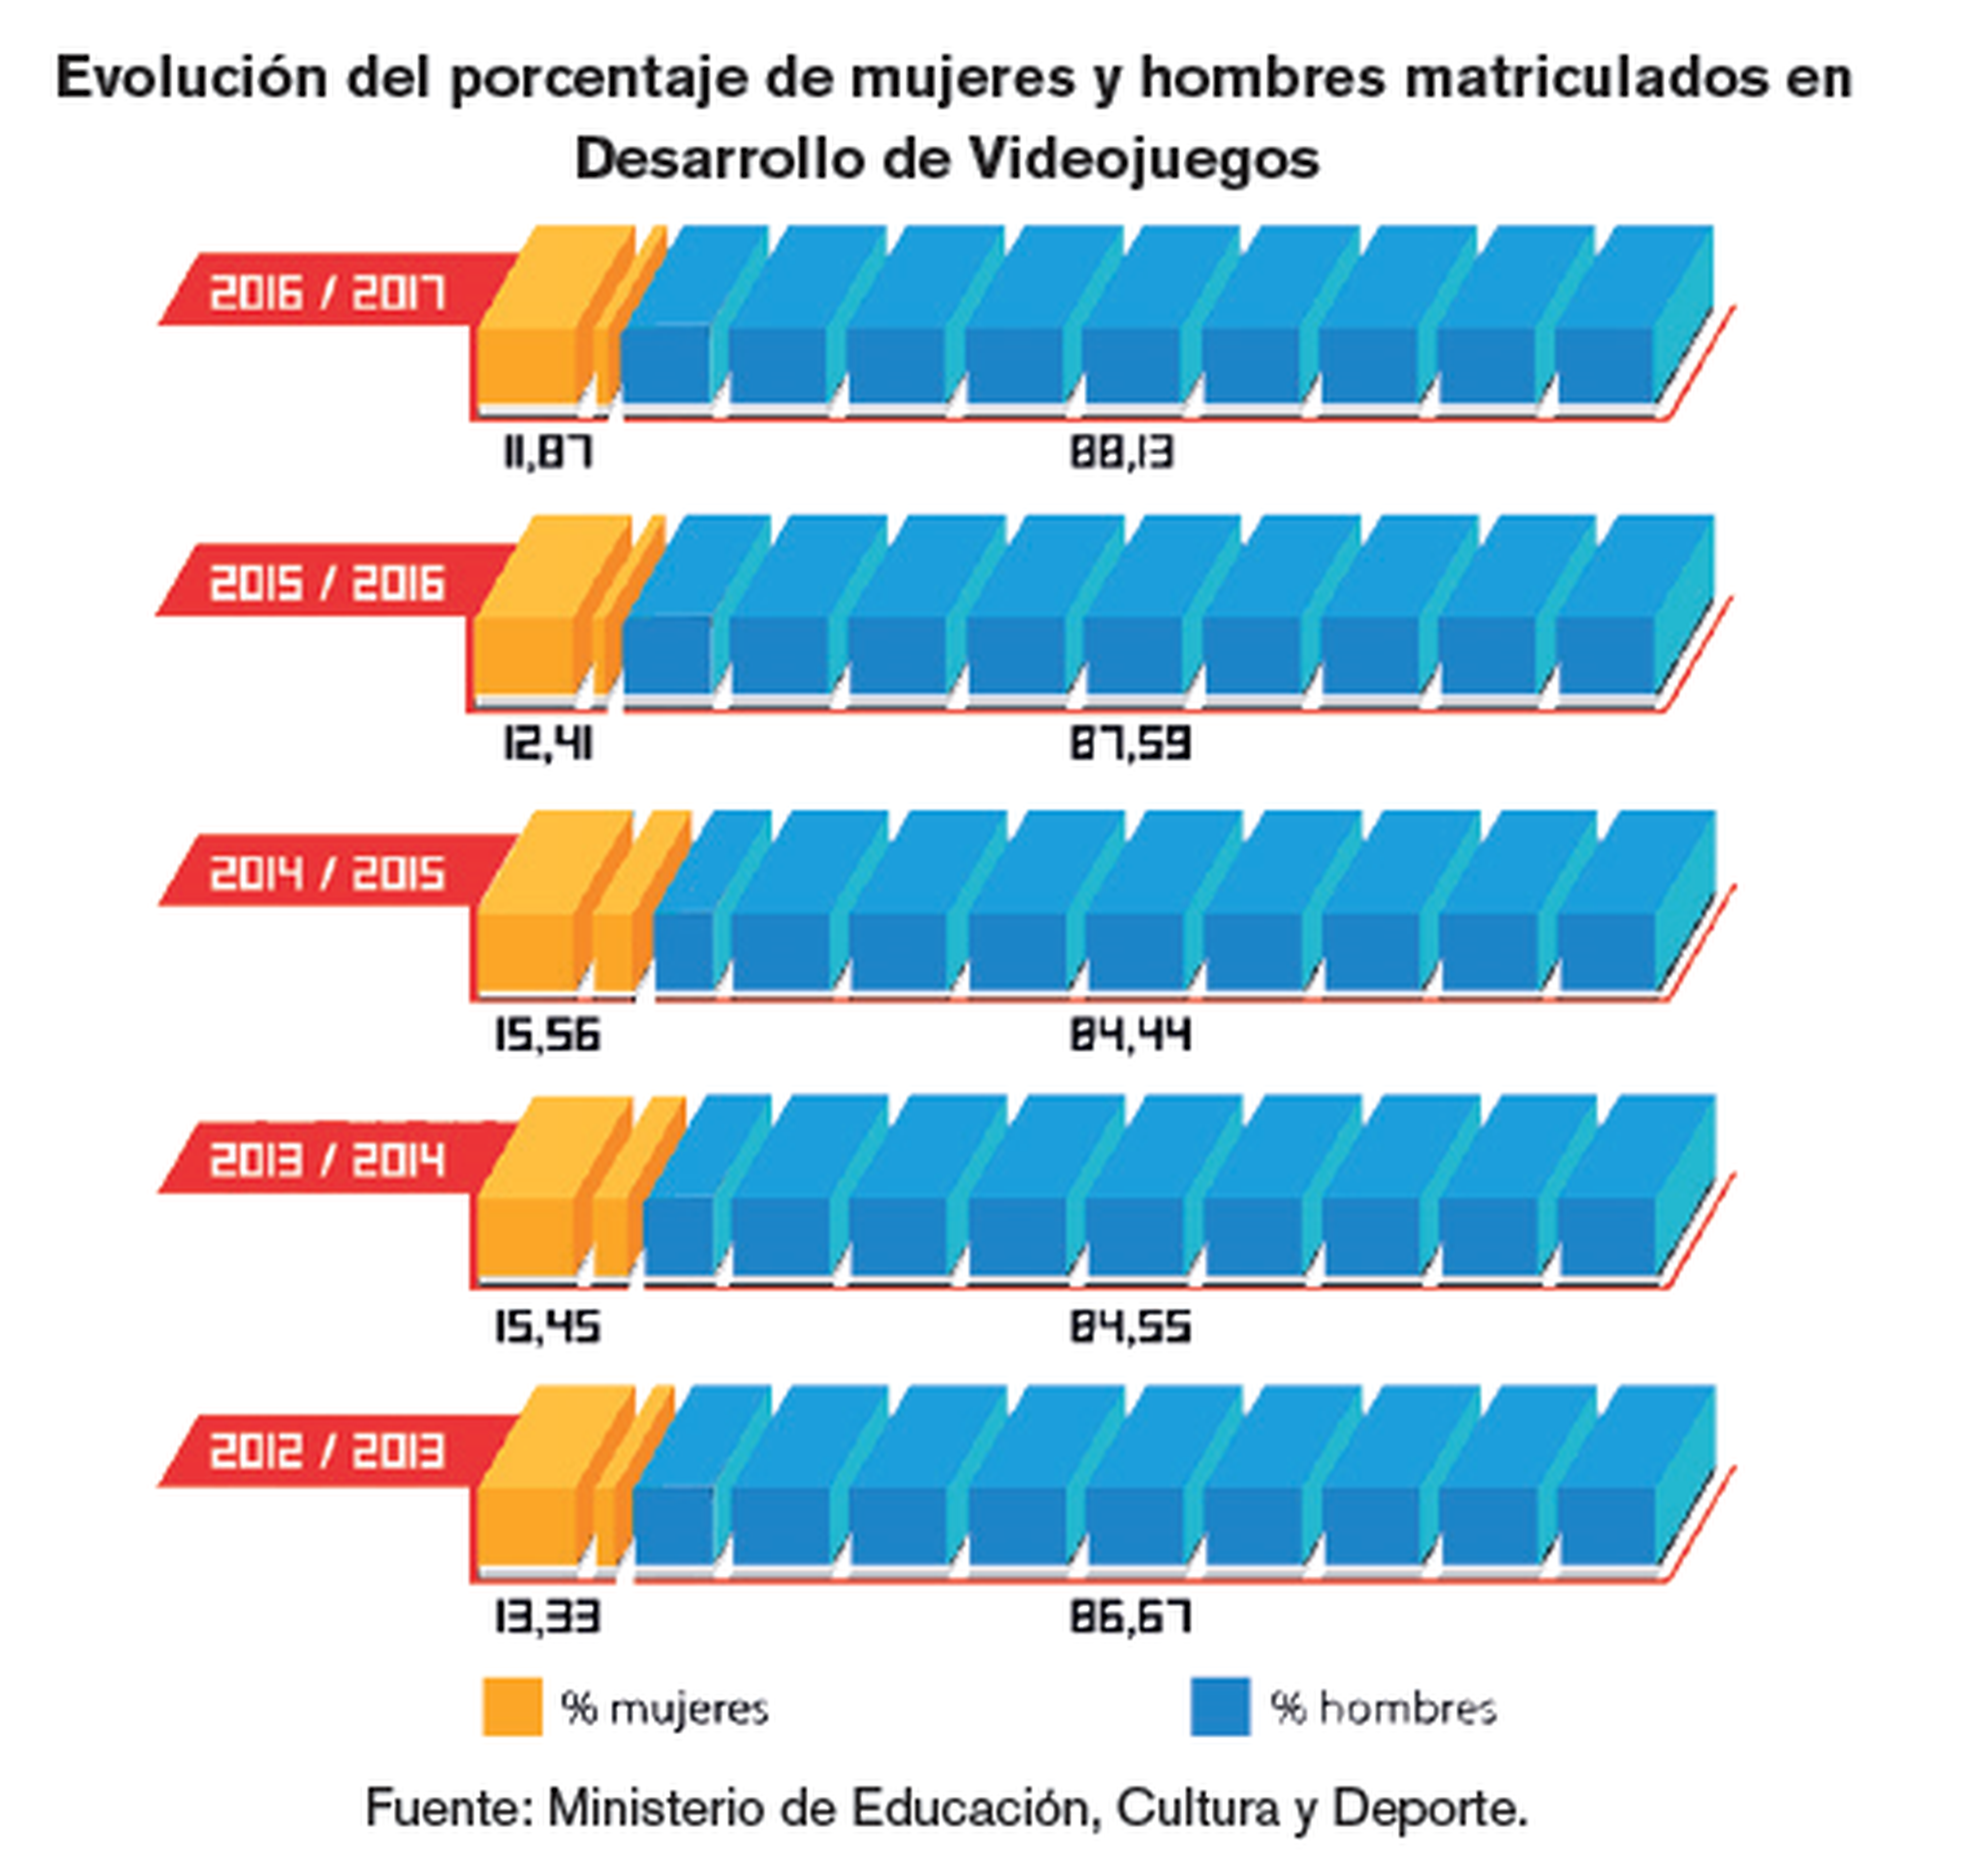 Evolución del porcentaje de mujeres y hombres matriculados en Desarrollo de Videojuegos. Fuente: Ministerio de Educación, Cultura y Deporte.